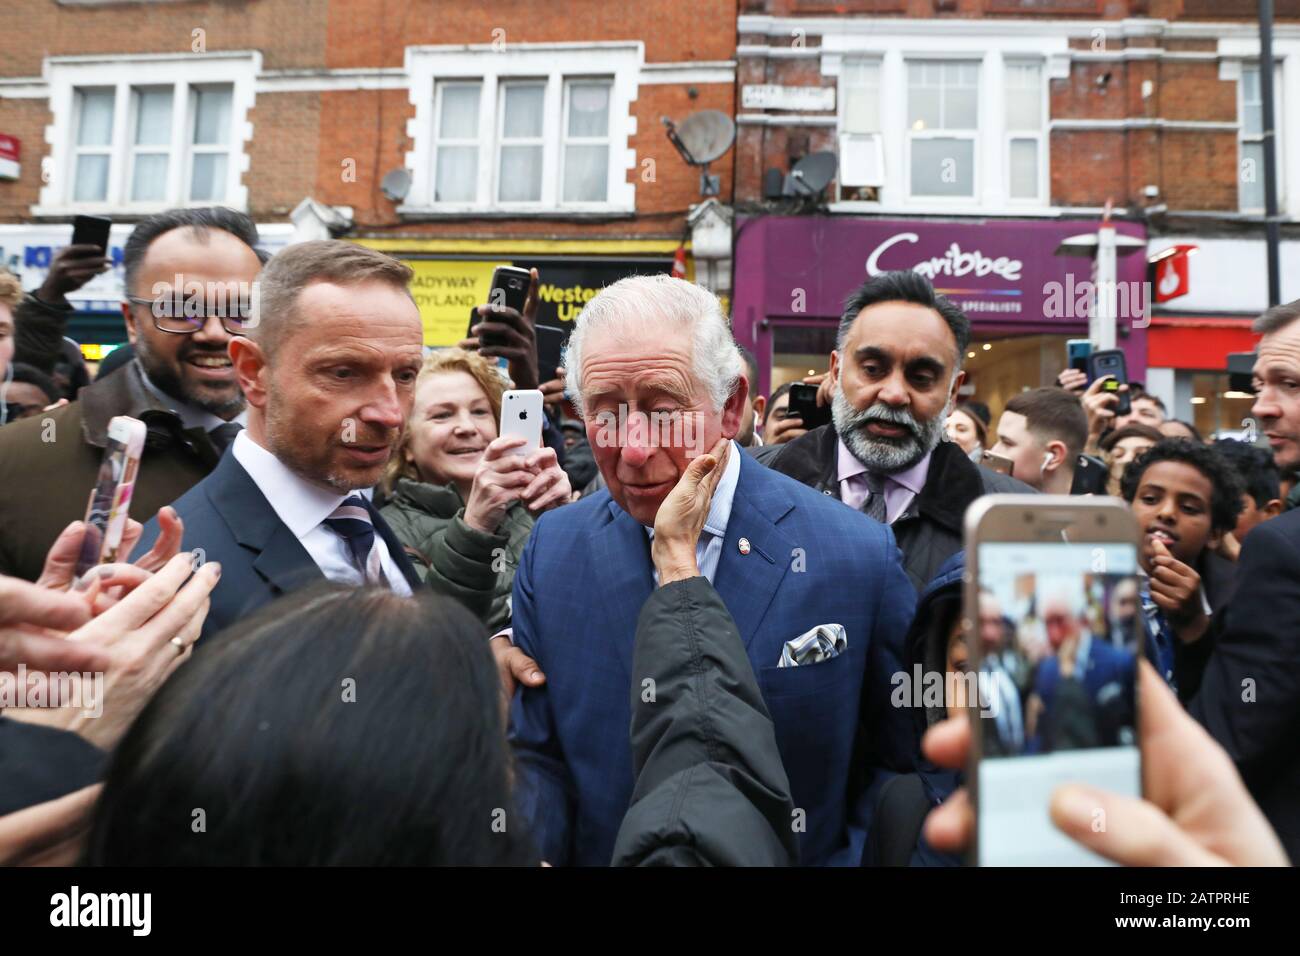 Der Prince of Wales wird von Mitgliedern der Öffentlichkeit begrüßt, da er einen TK Maxx Store in Tooting High Street, London verlässt, nachdem er sich mit Mitarbeitern, die Prince's Trust Alumni im Laden sind, zusammenfand. Stockfoto